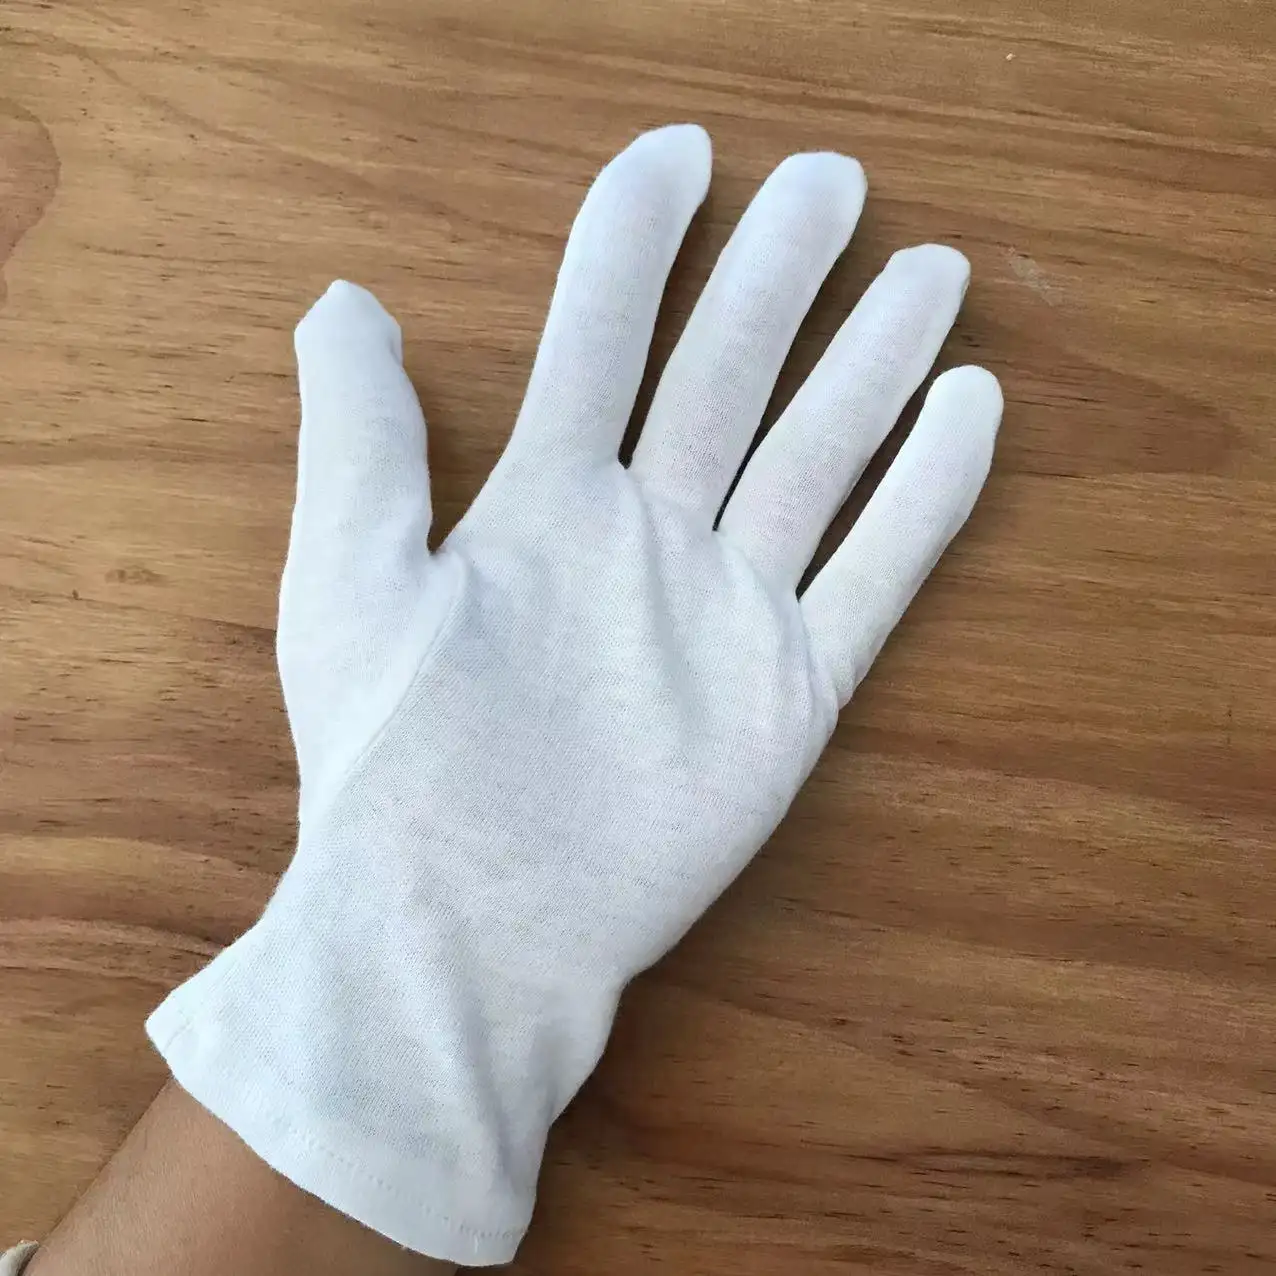 All Size Katoenen Handschoenen Wit Voor Eczeem Therapie En Schoonheid Witte Katoenen Sieraden Inspectie Handschoenen